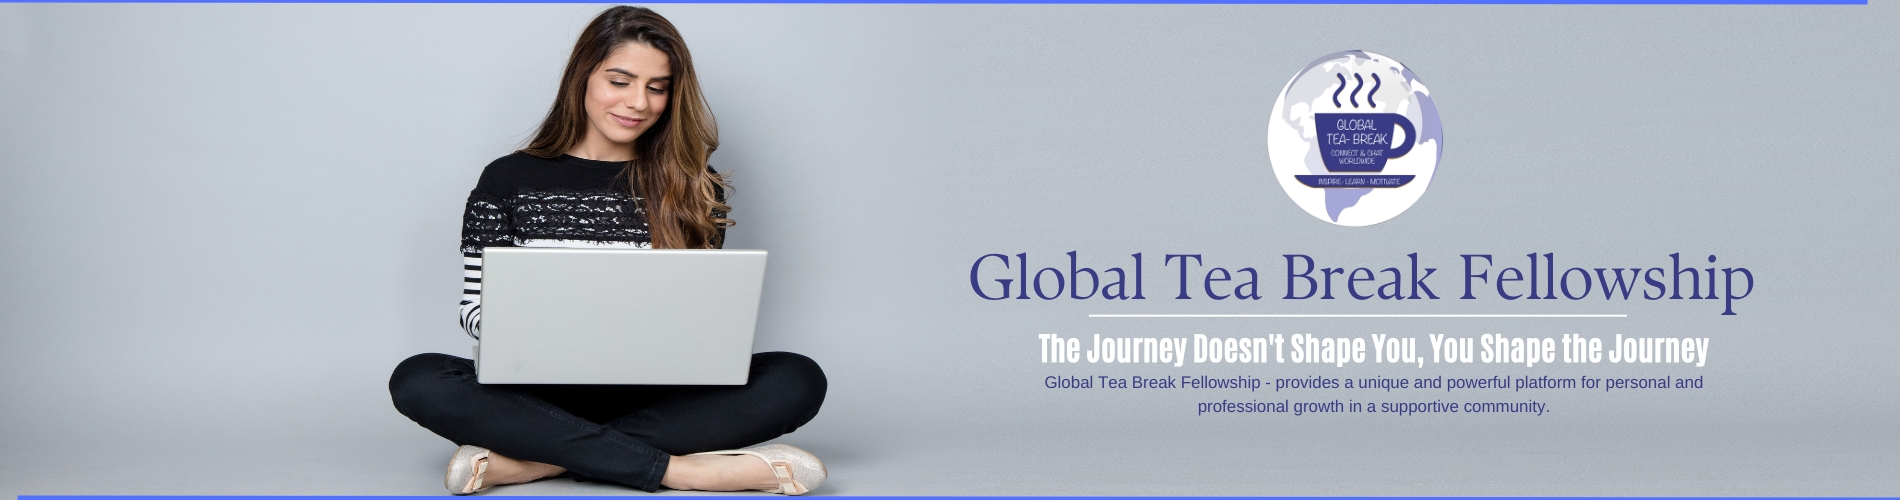 Global Tea Break Fellowship